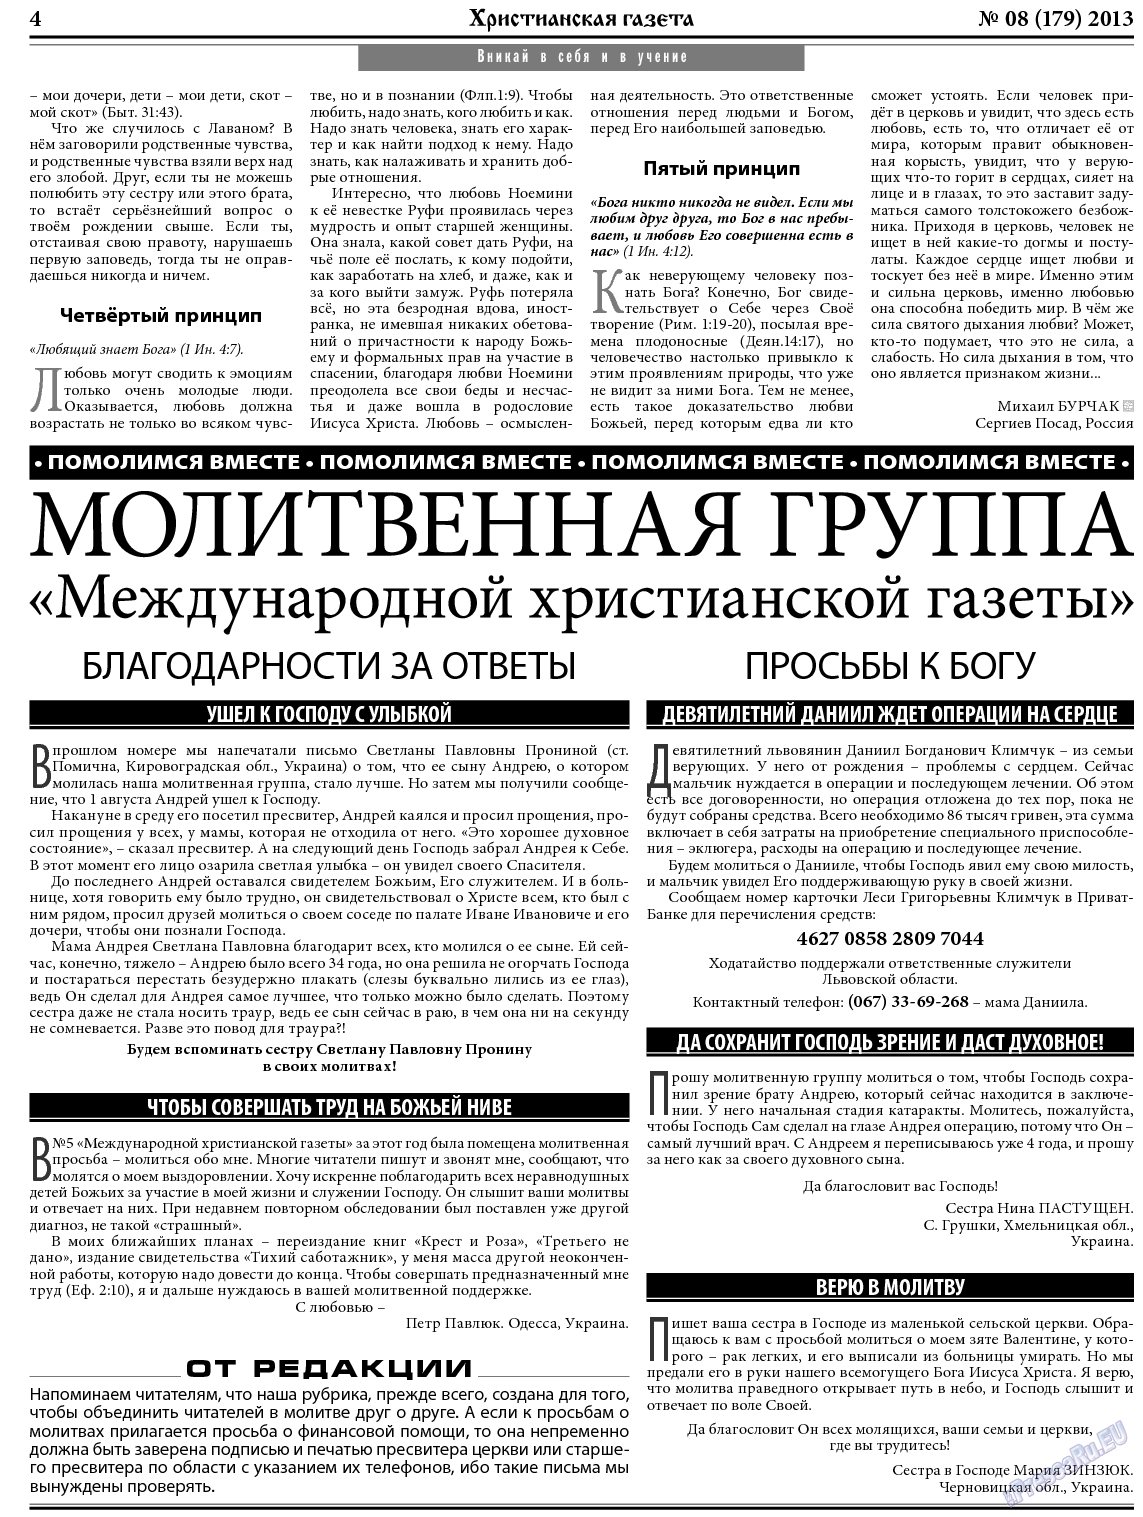 Христианская газета, газета. 2013 №8 стр.4